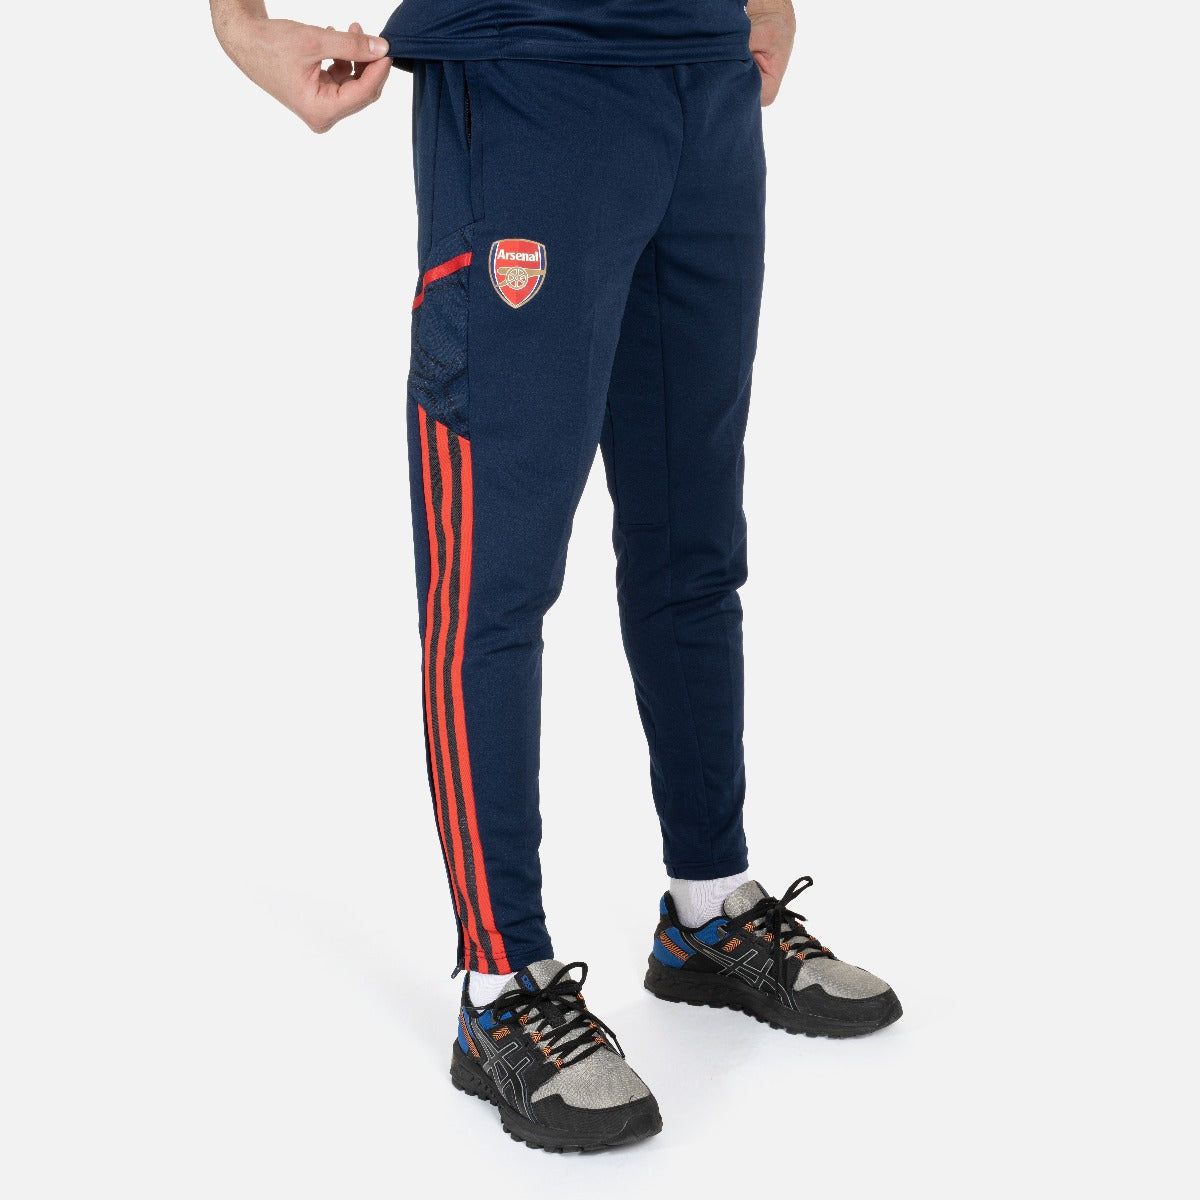 Pantaloni allenamento Arsenal Condivo 2022/2023 - Blu/Rosso